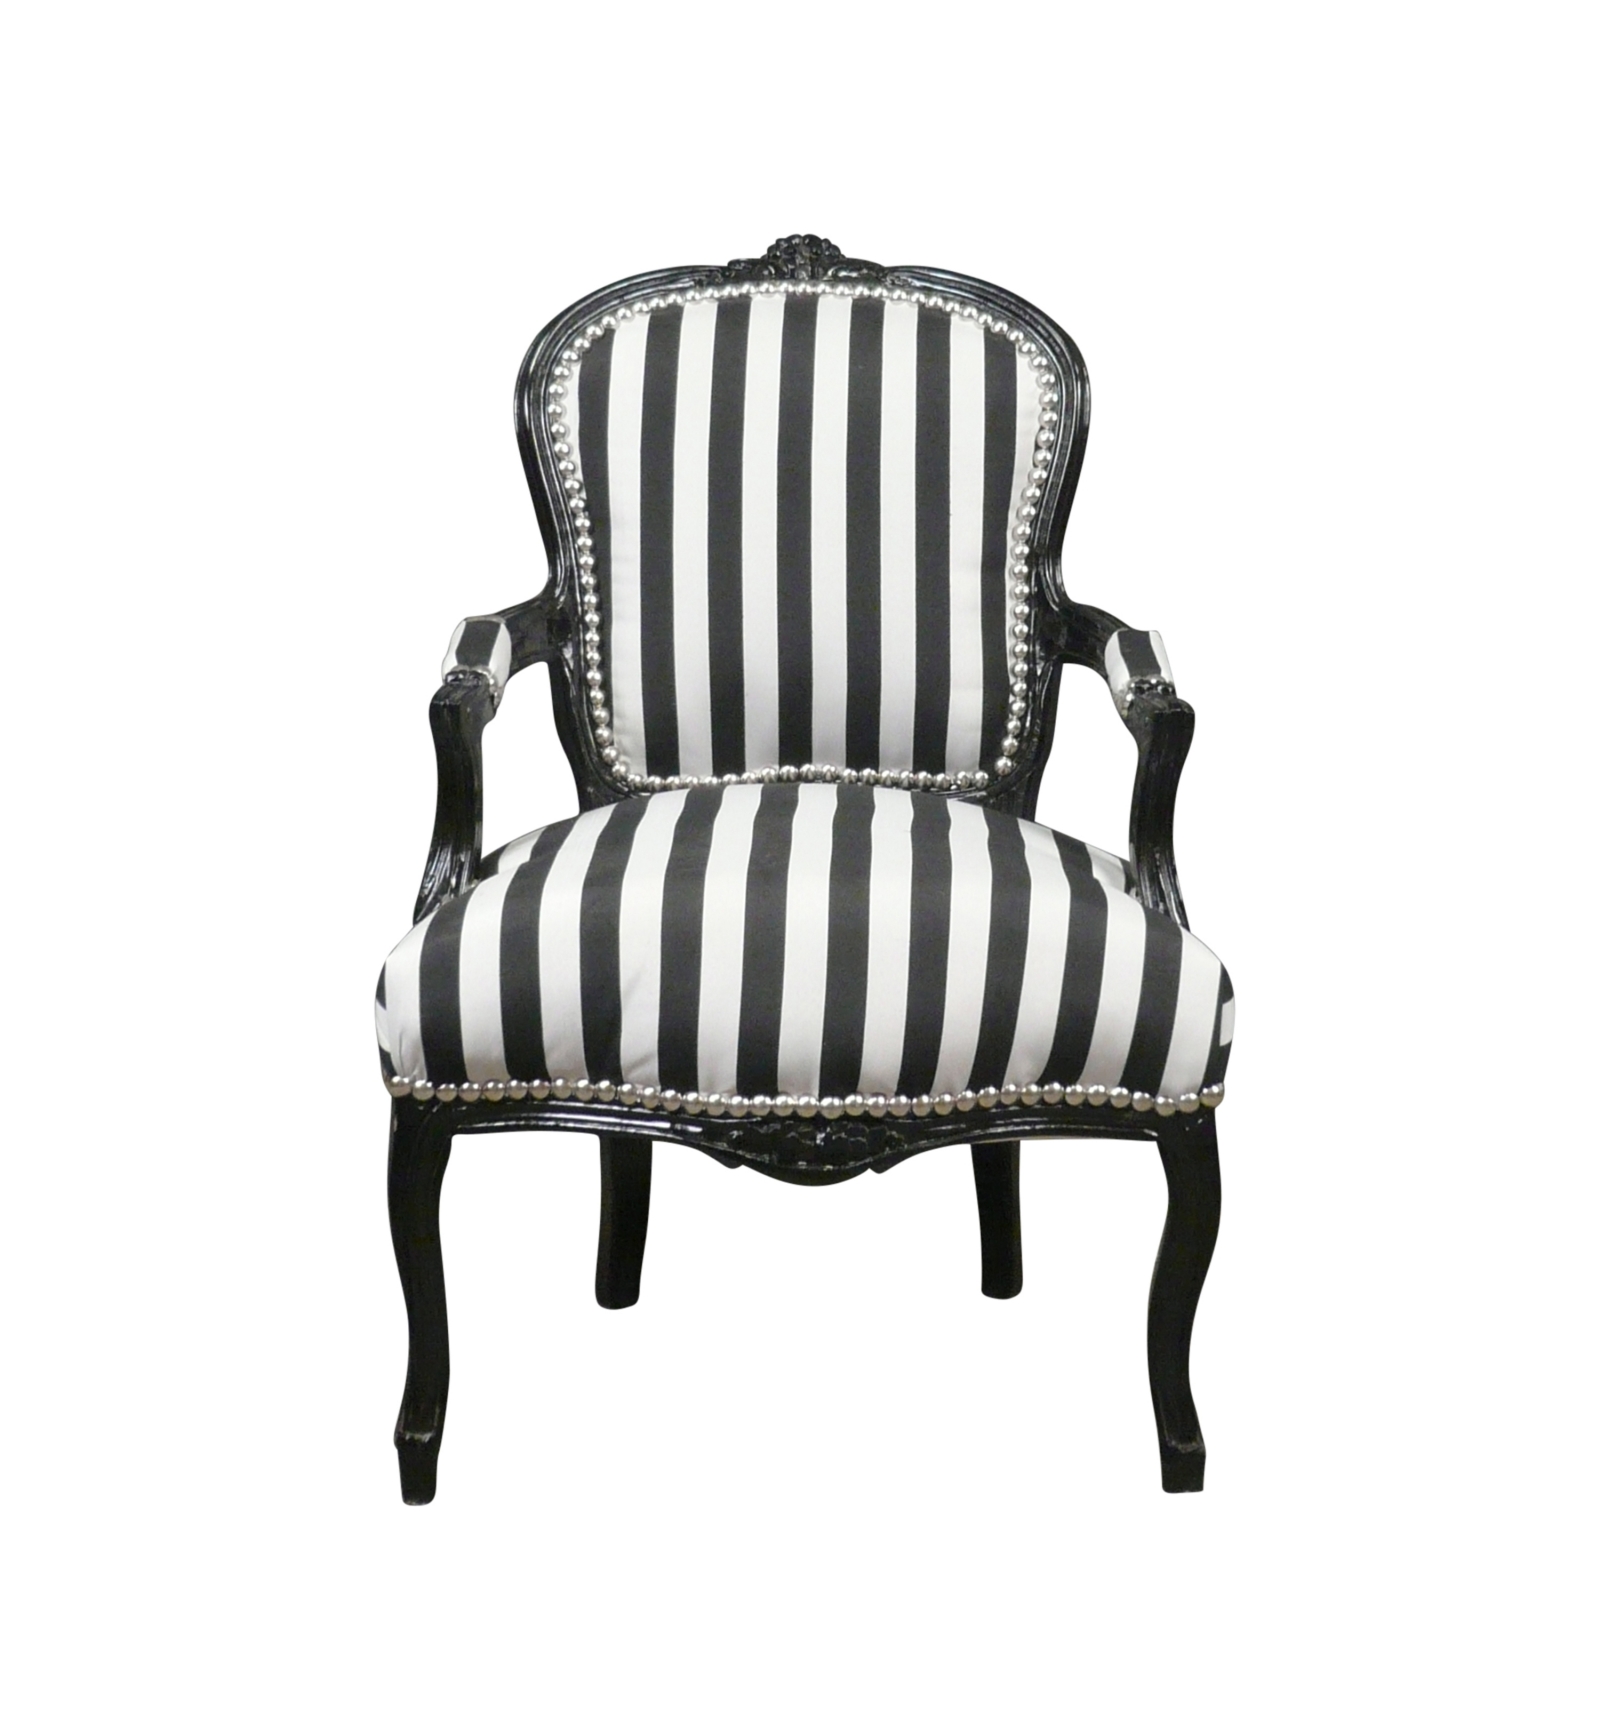 XV fauteuil met zwart-witte strepen - Louis XV Furniture